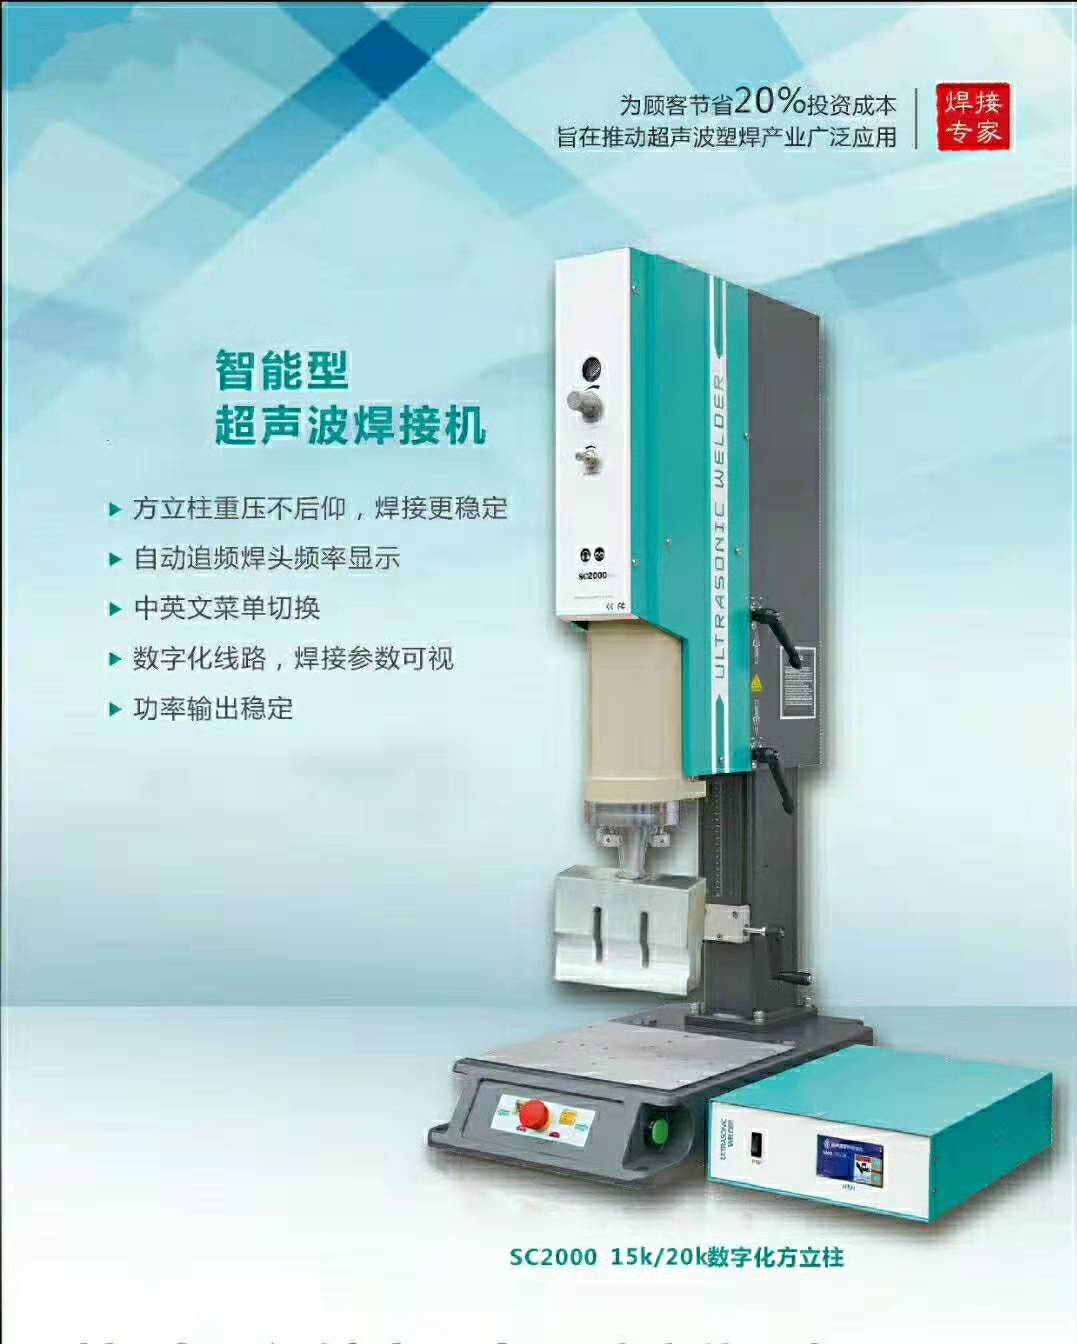 重庆电源连接器焊接价格厂家直销报价公司供应商图片